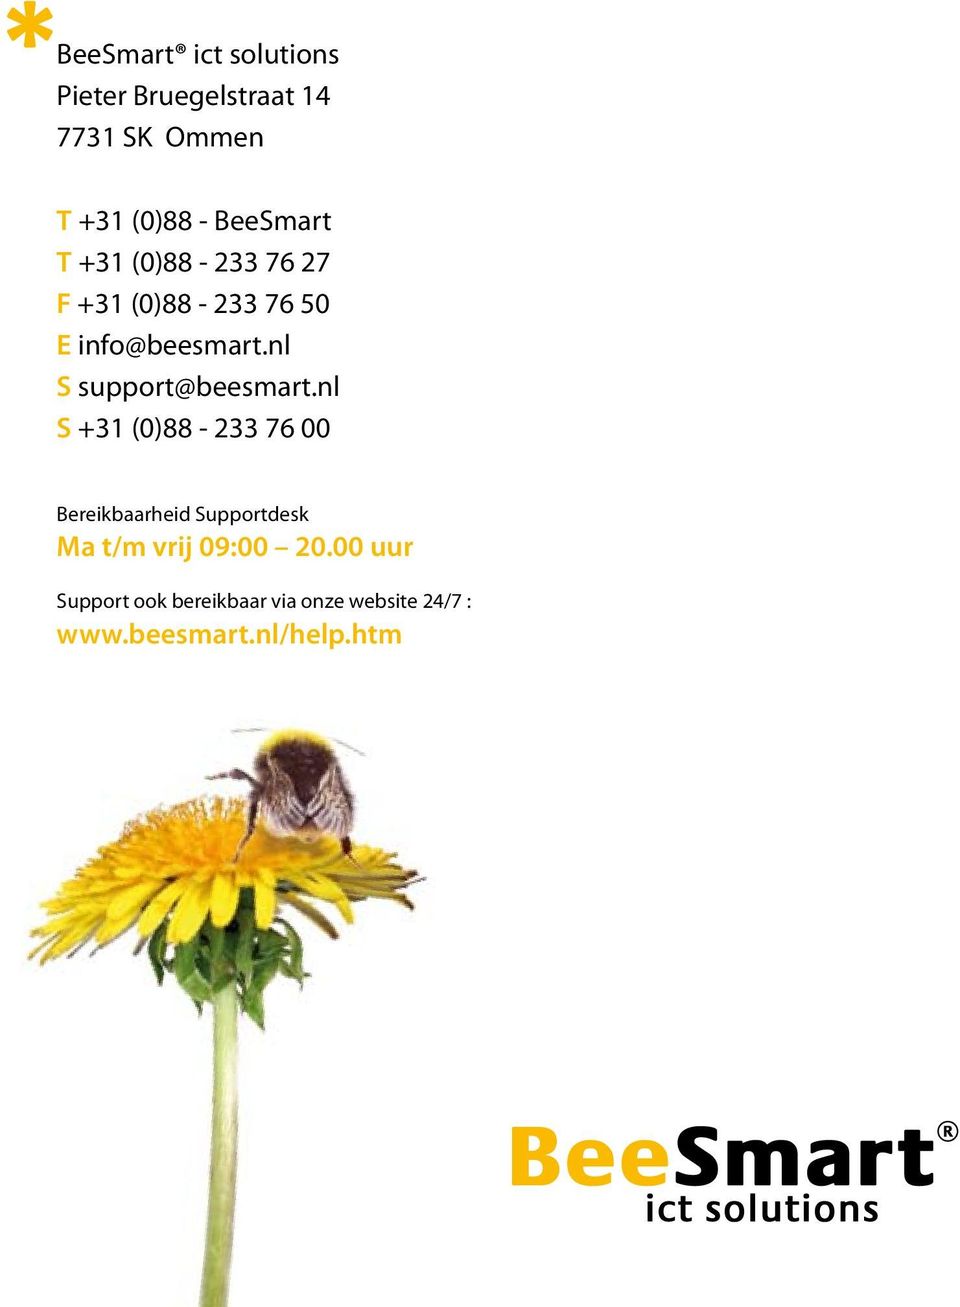 nl S support@beesmart.